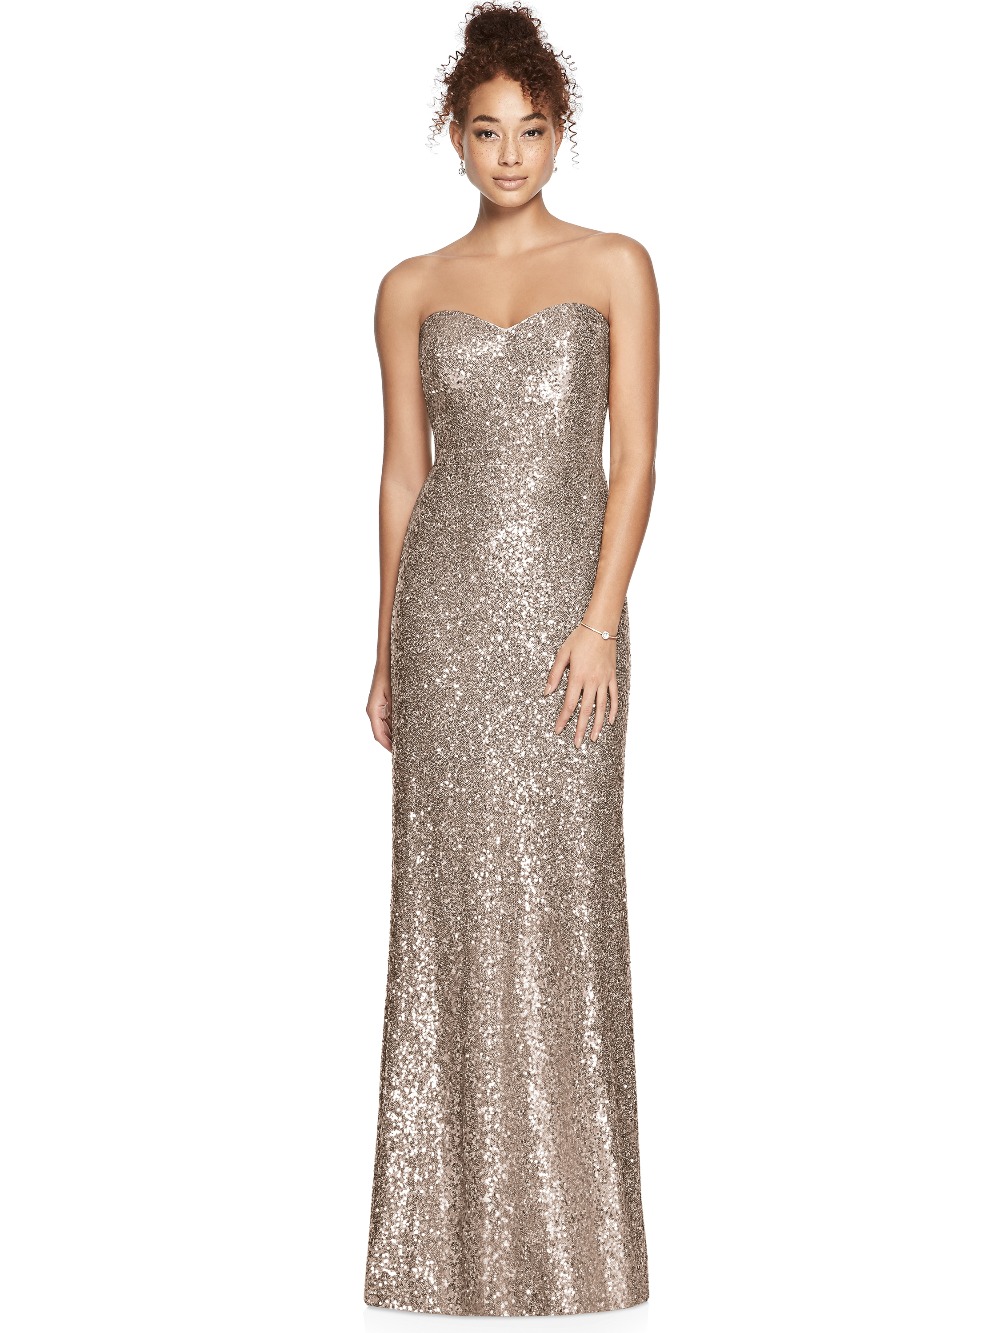 sequin-bridesmaid-dresses51